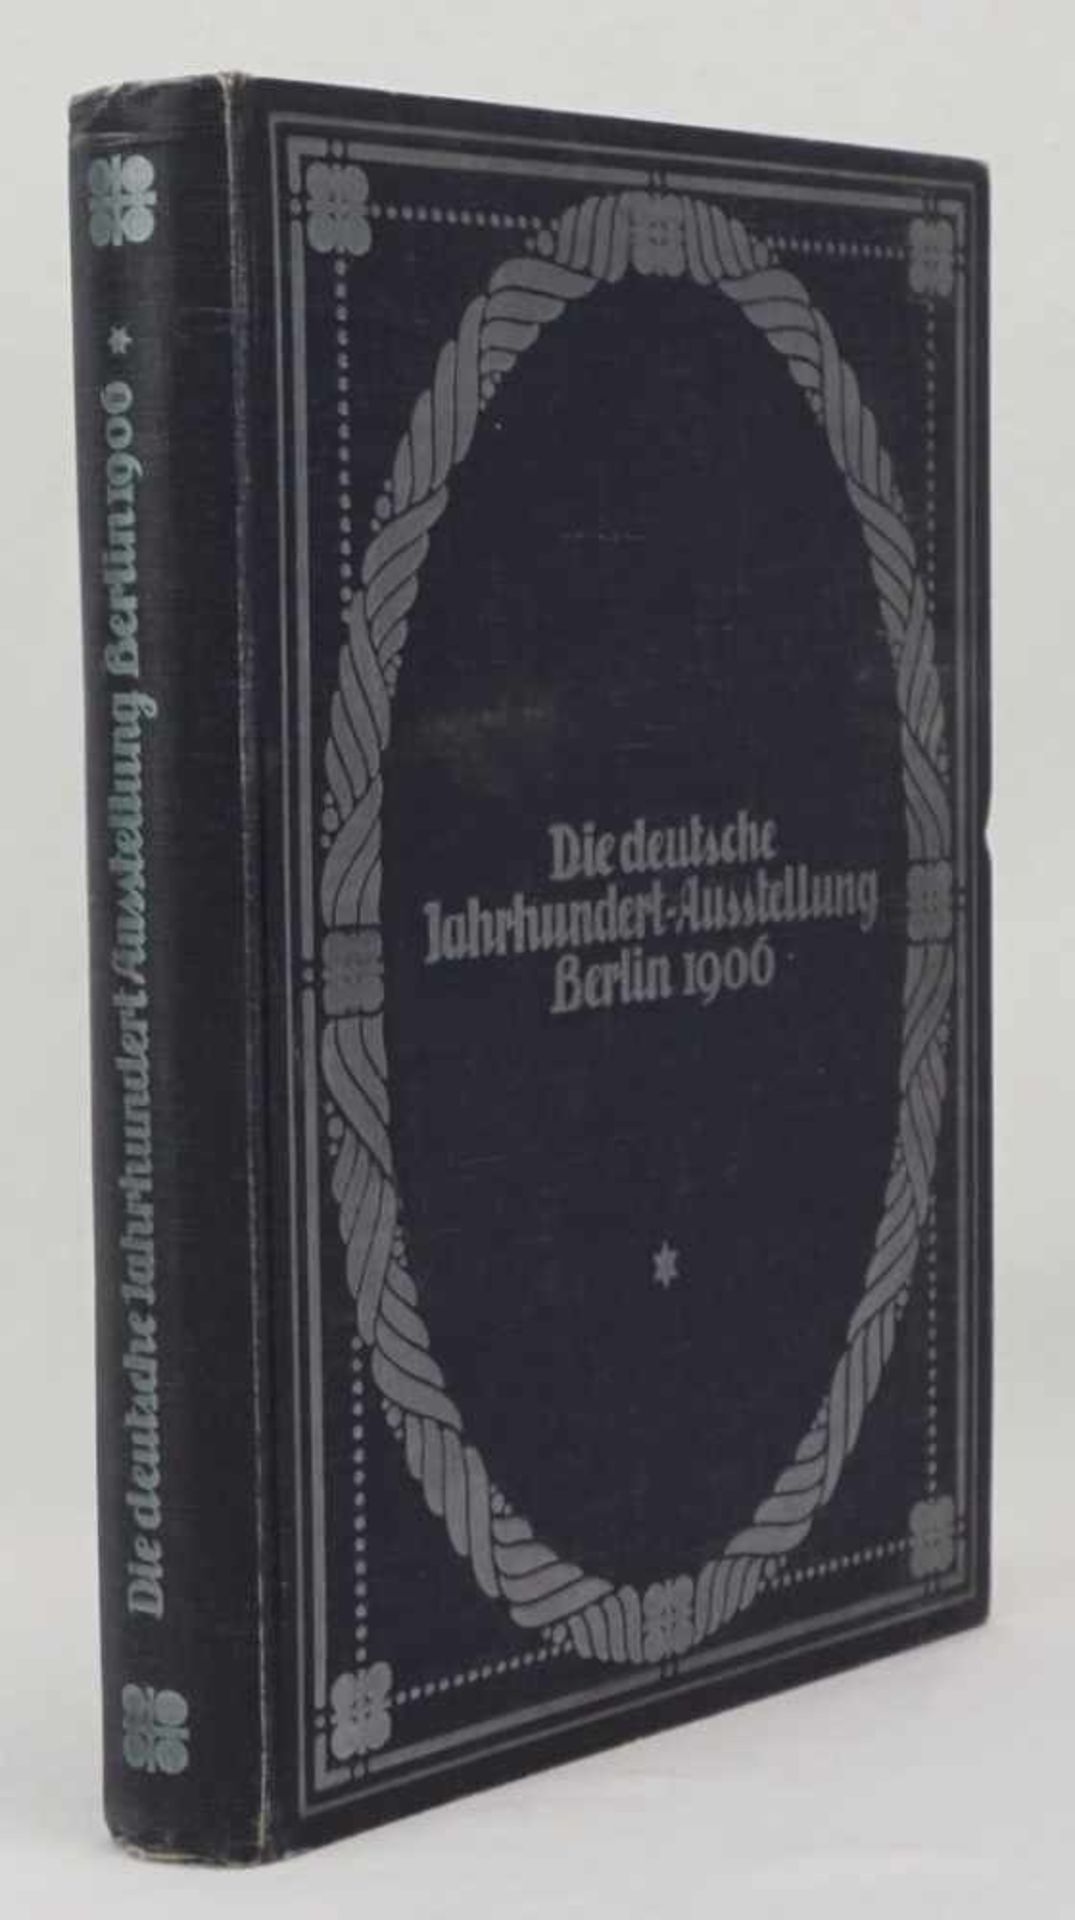 Hugo von Tschudi, "Die deutsche Jahrhundert-Ausstellung Berlin 1906" - Image 2 of 5